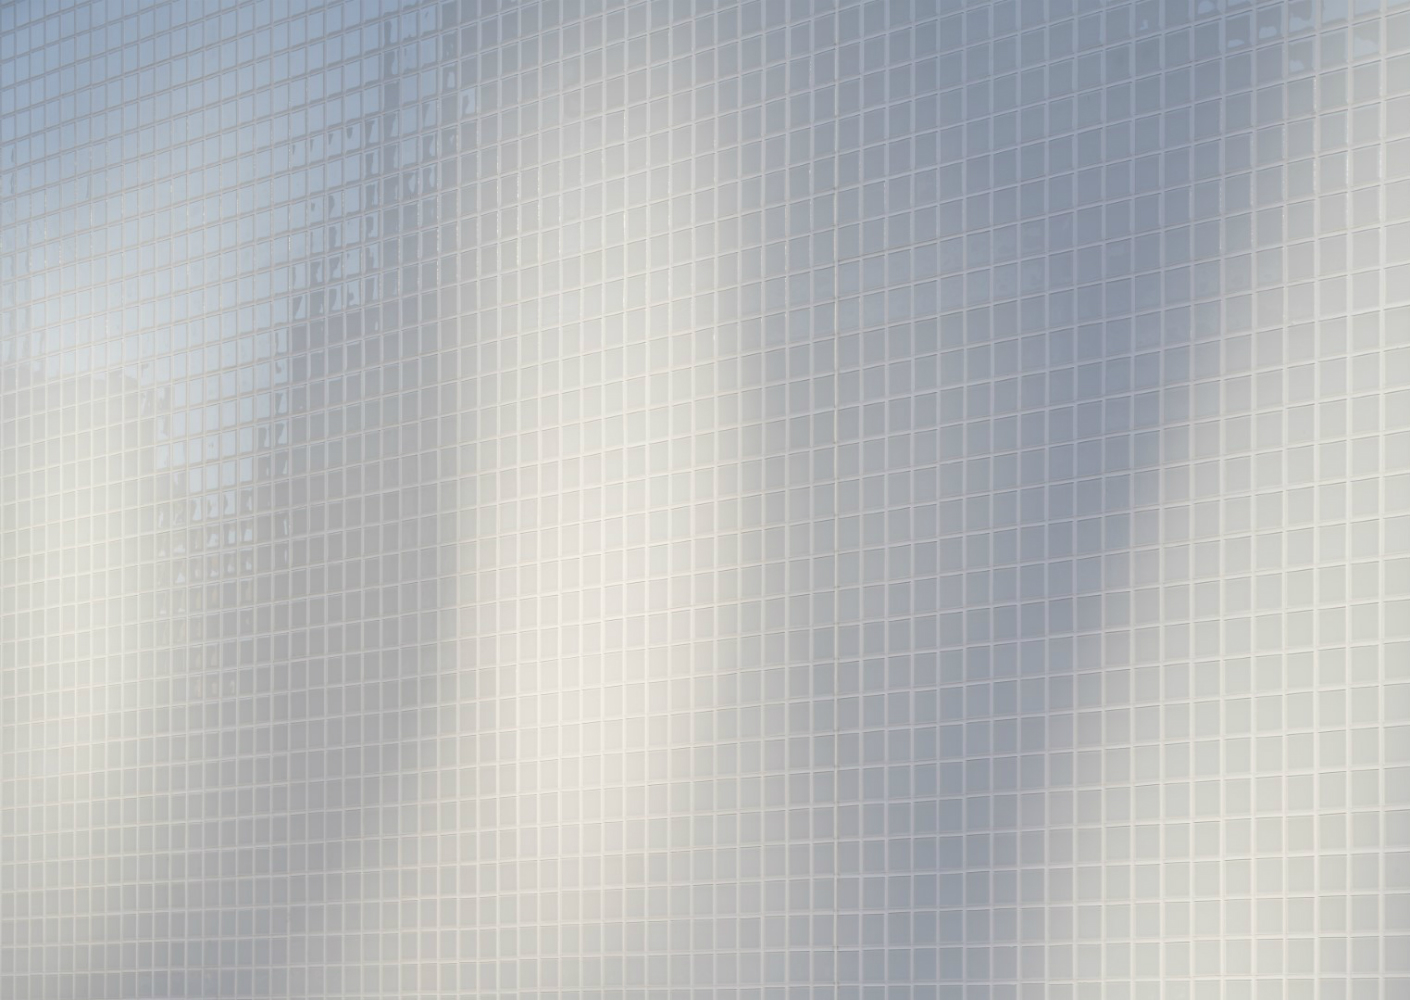 Sto - Bijzonder glasmozaïek siert hedendaagse architectuur